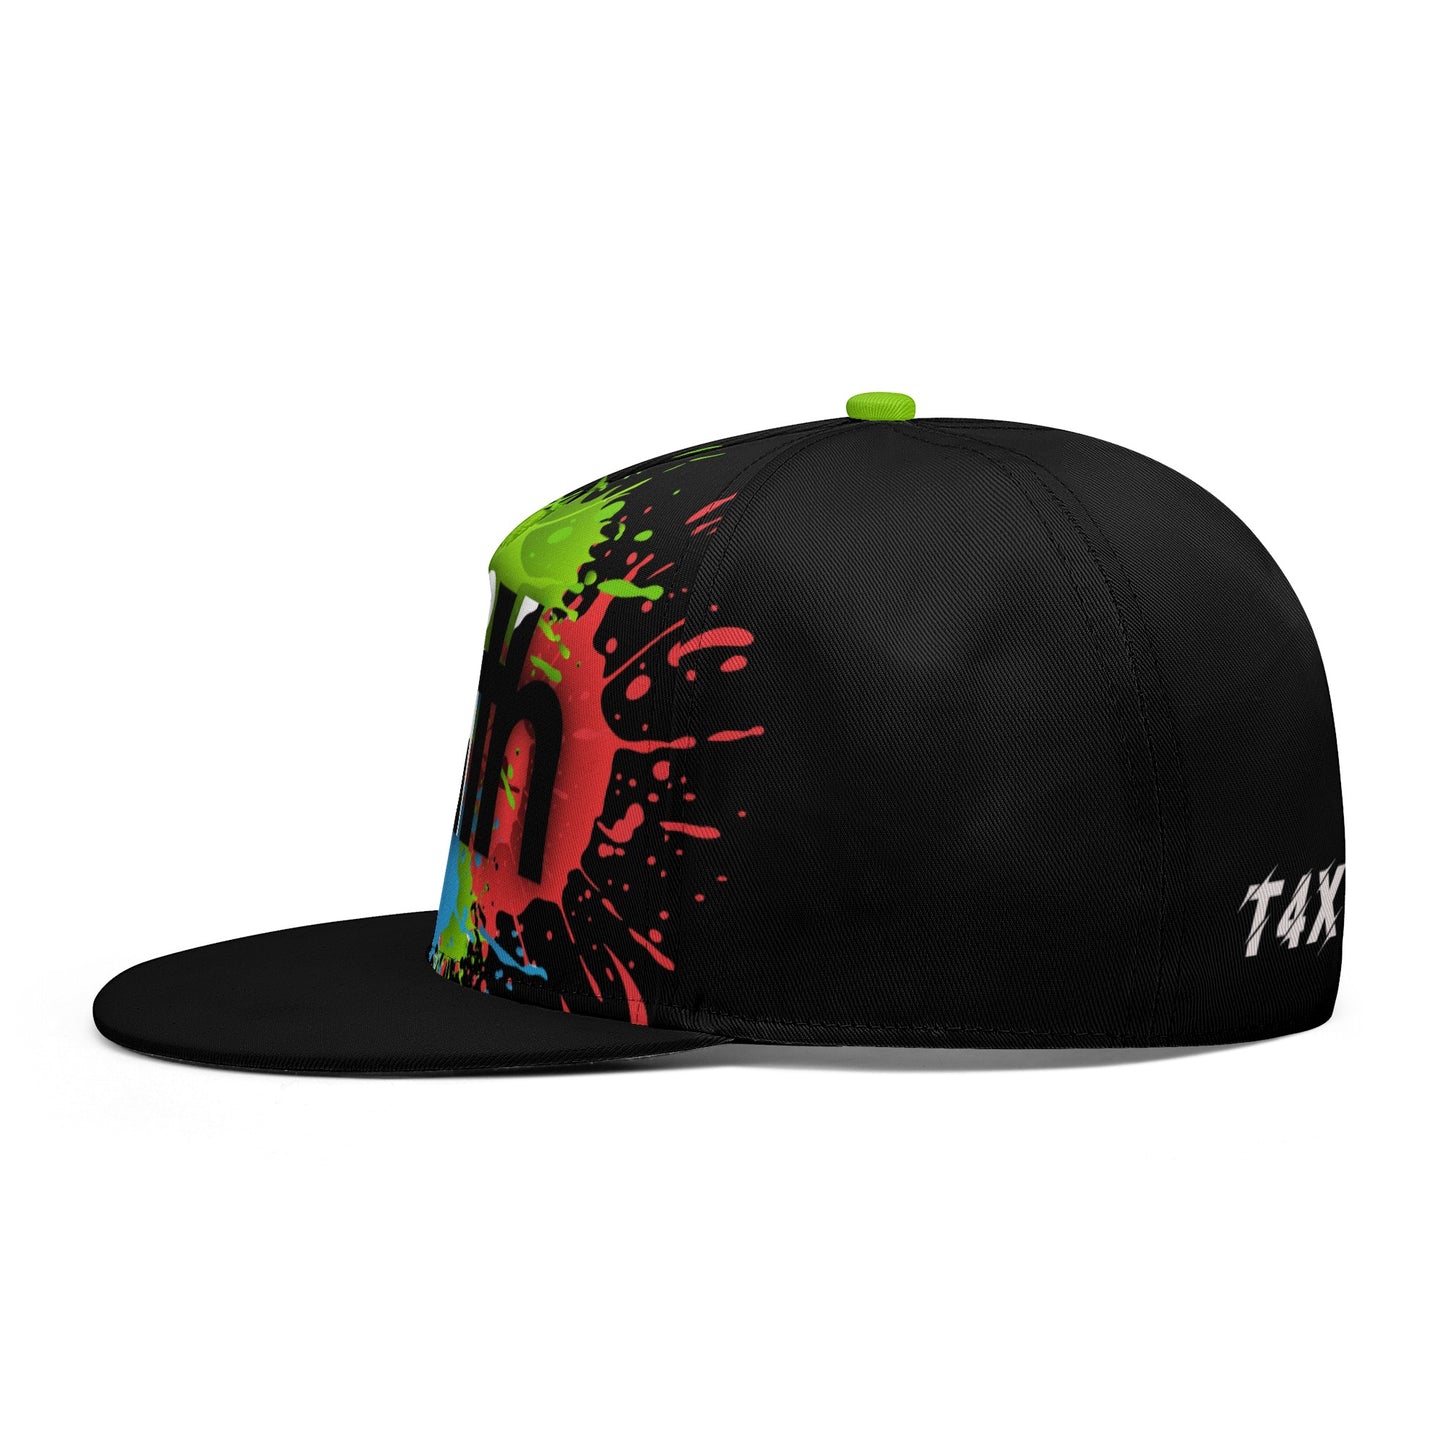 T4x Black Faith Hip-hop Caps